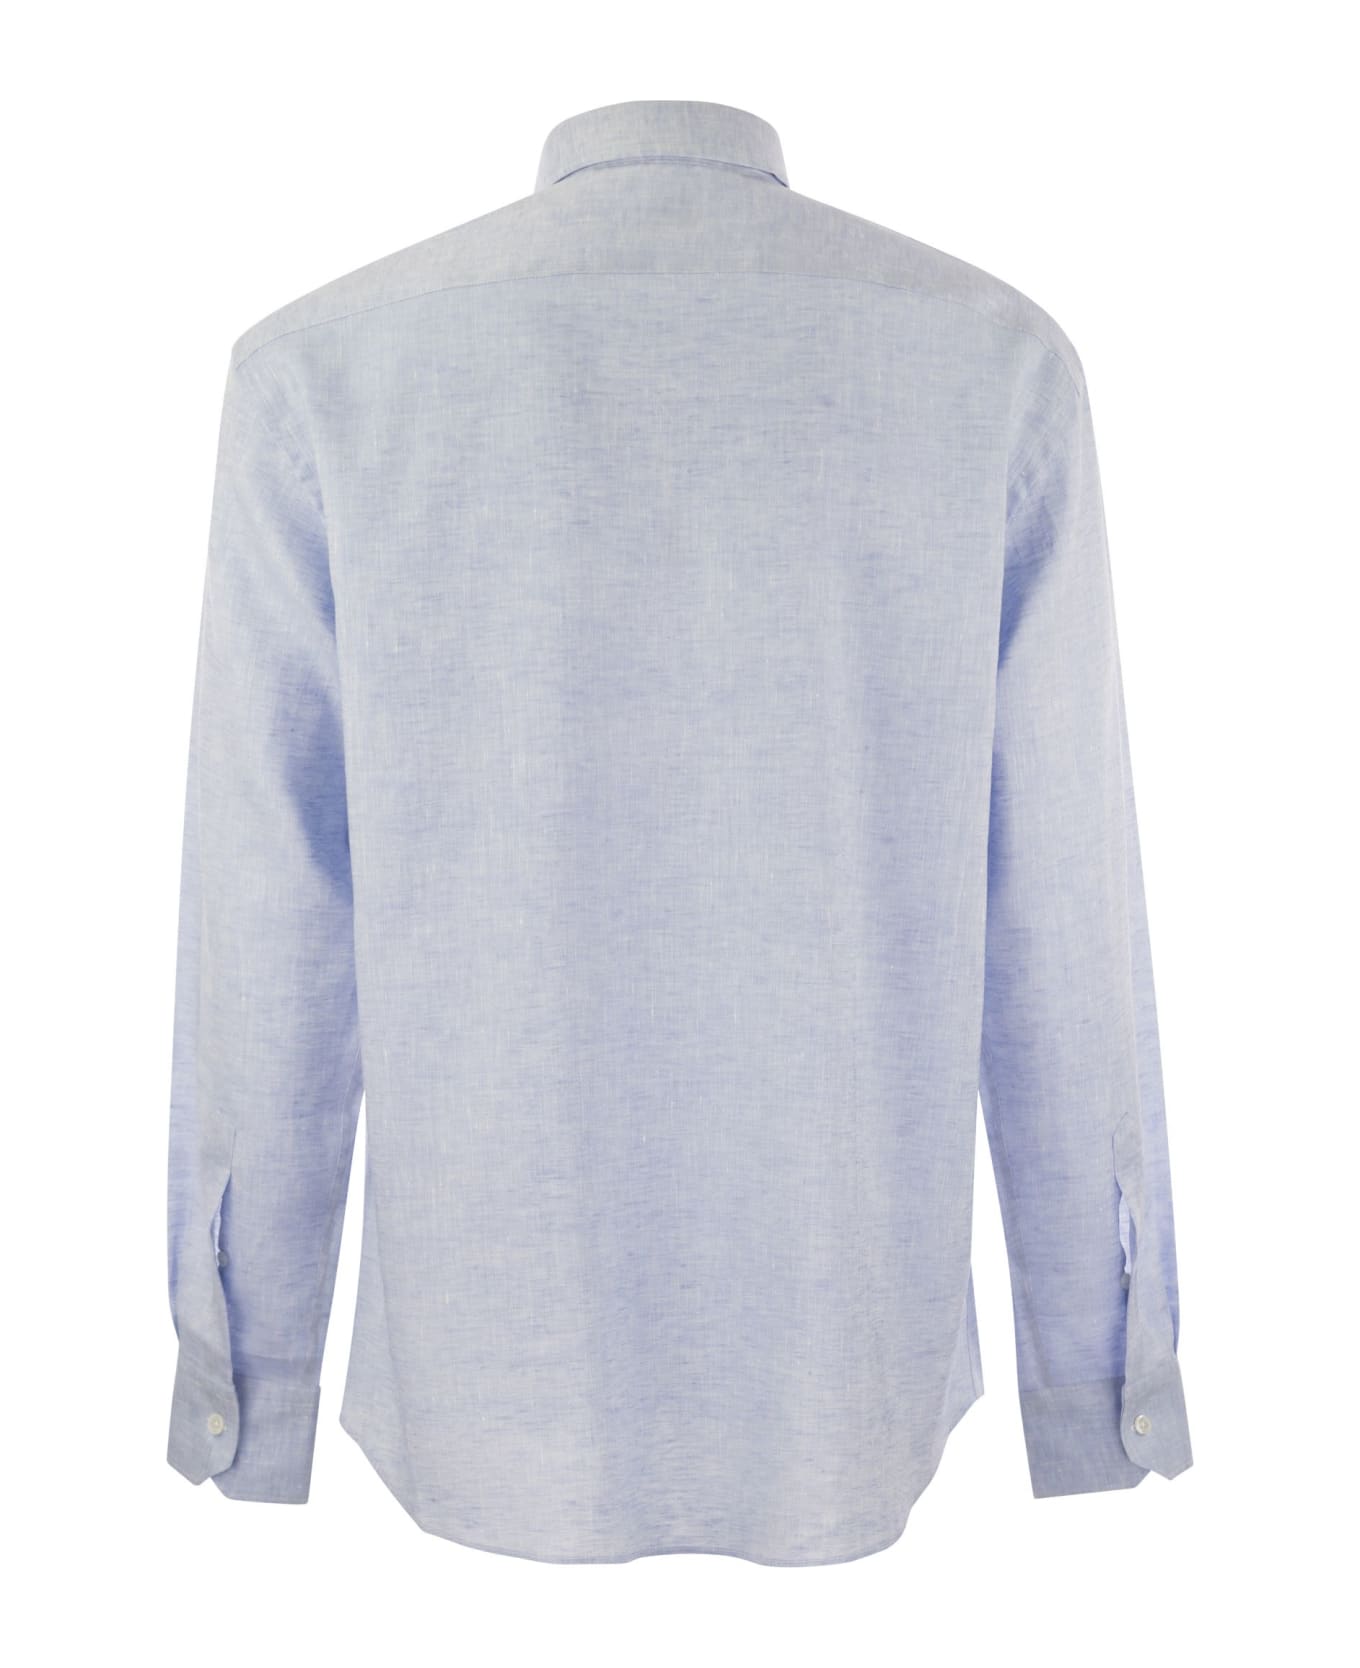 Fedeli Roby - Linen Shirt - Light Blue シャツ